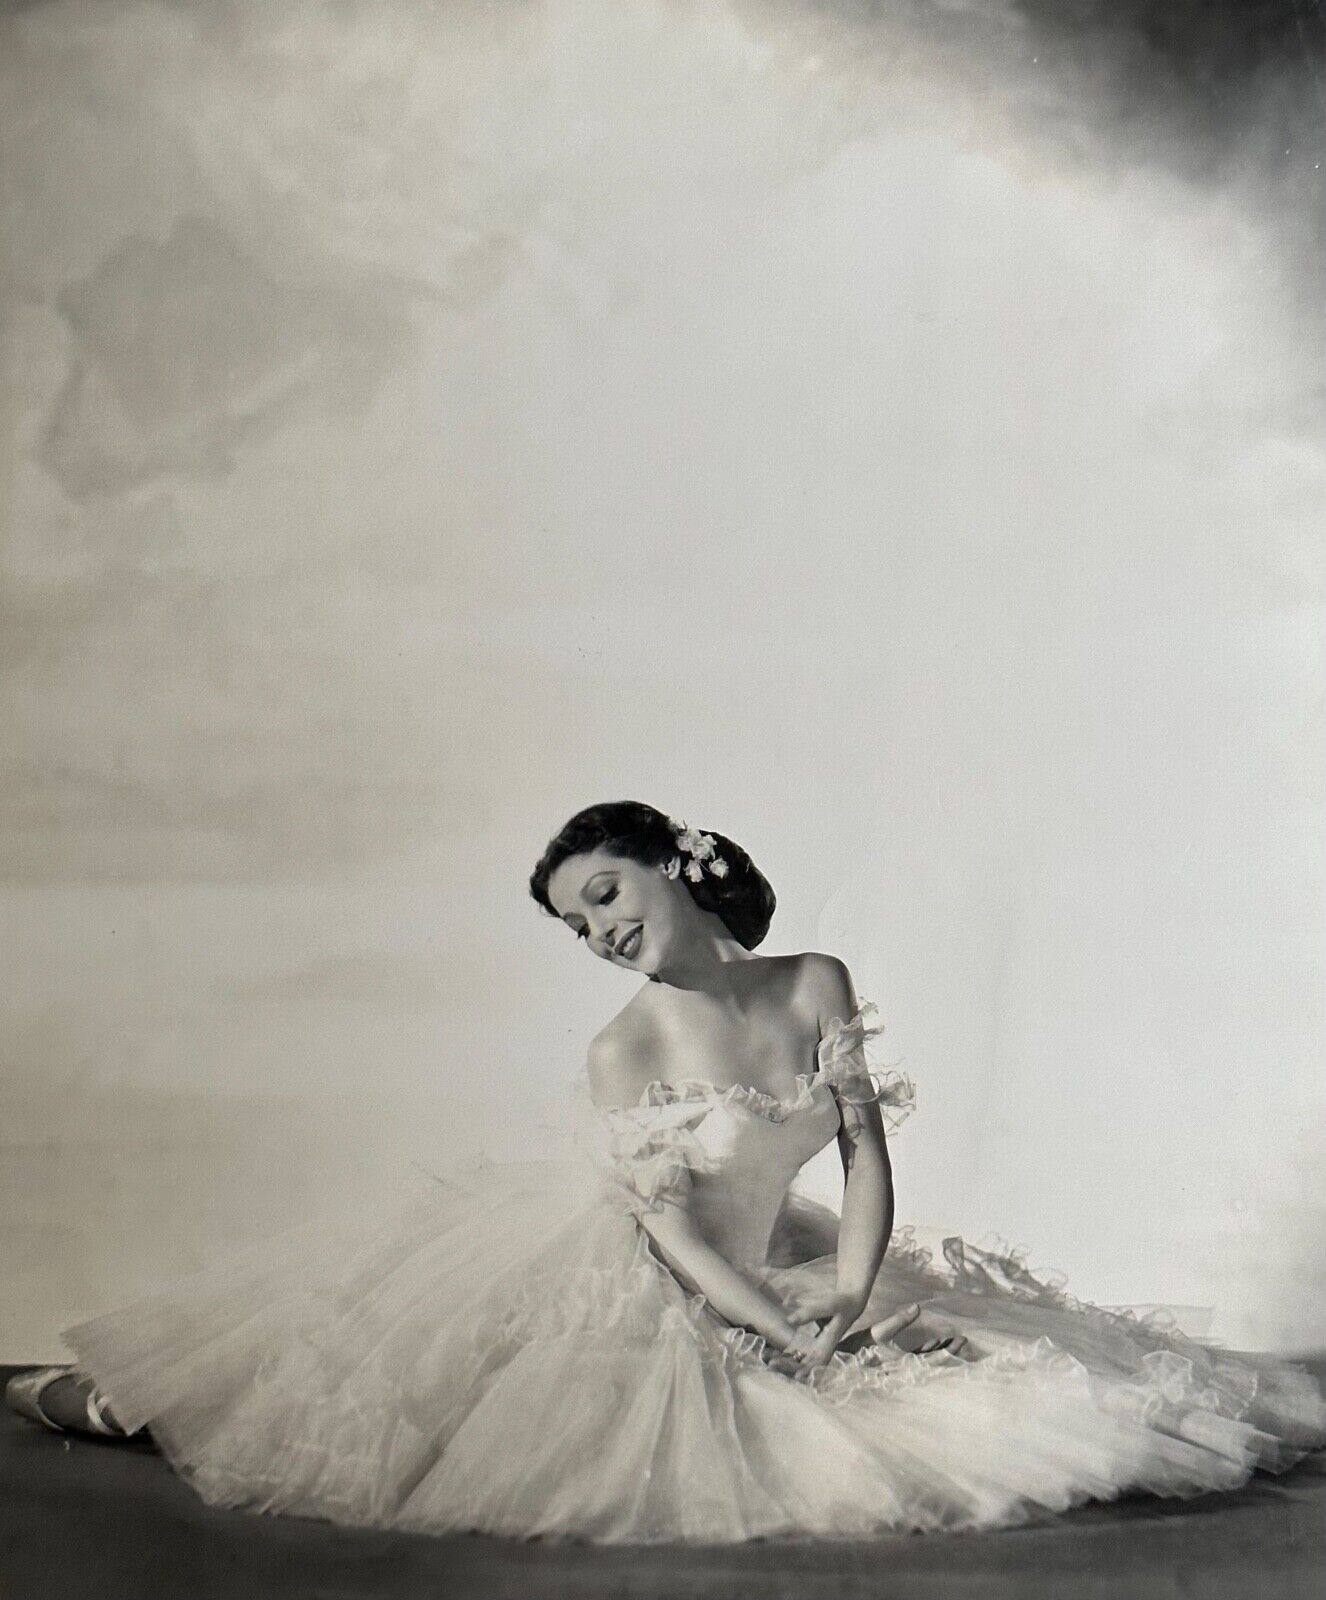 LORETTA YOUNG As A Ballerina Original Photo By Whitey Schafer Circa 1941